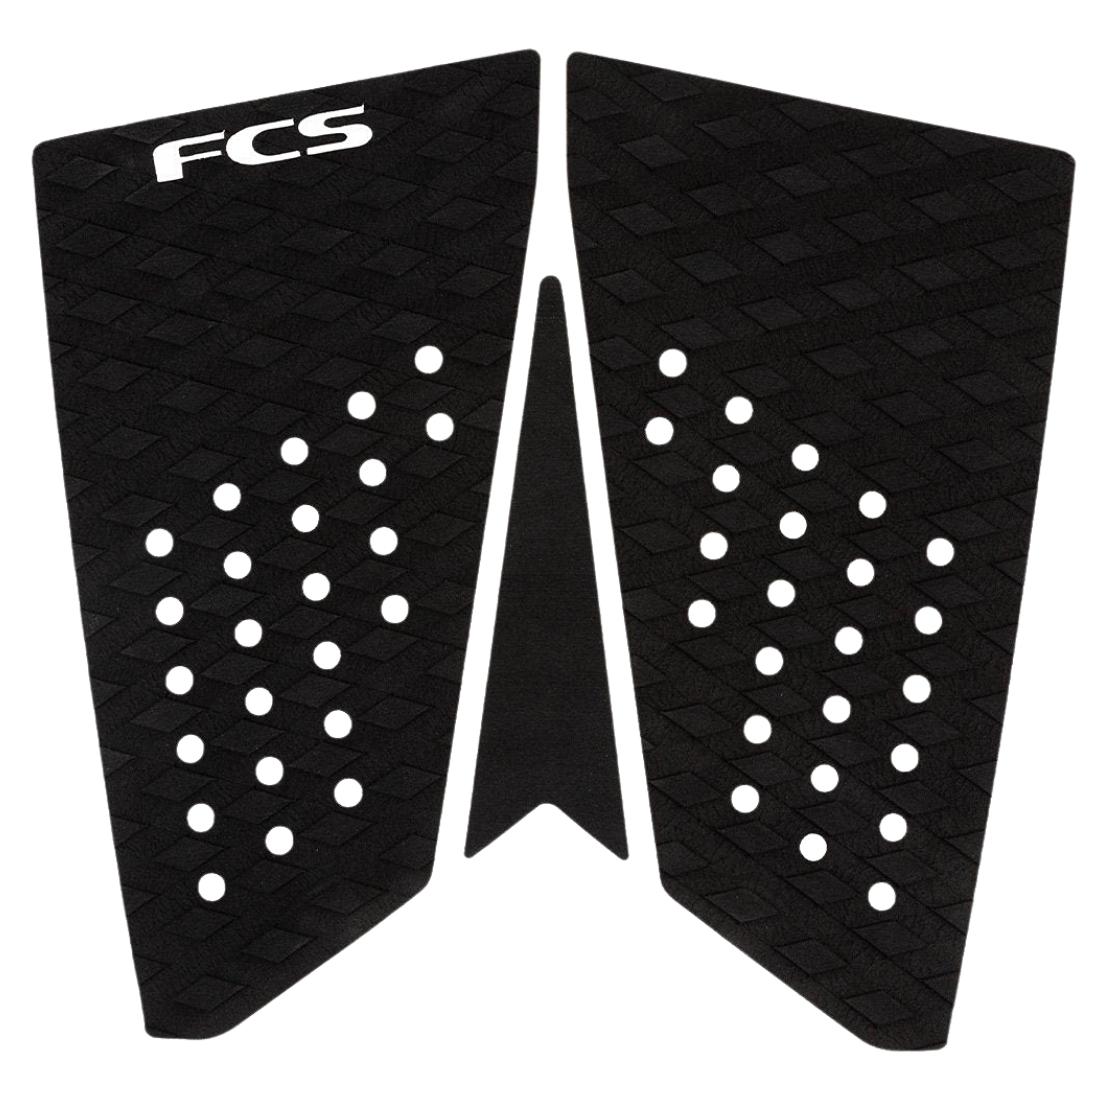 FCS T3 Fish Surfboard Tail Pad - Black - 3 Piece Tail Pad by FCS